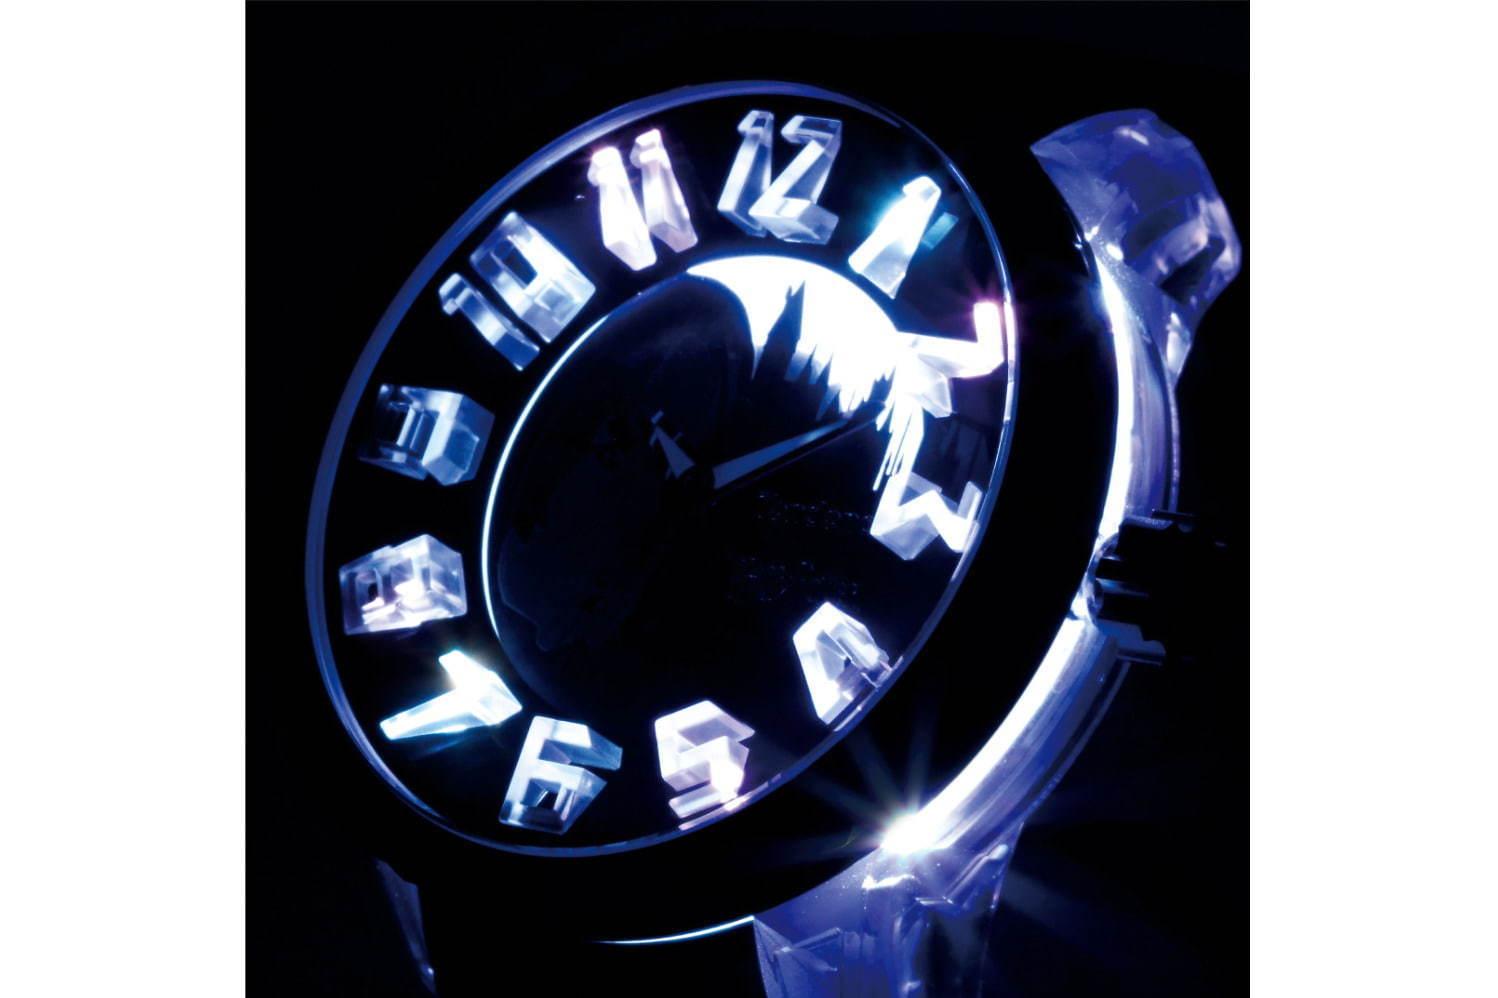 テンデンス×「ハリー・ポッター」の腕時計、魔法の杖の秒針やホグワーツのエンブレムデザイン コピー